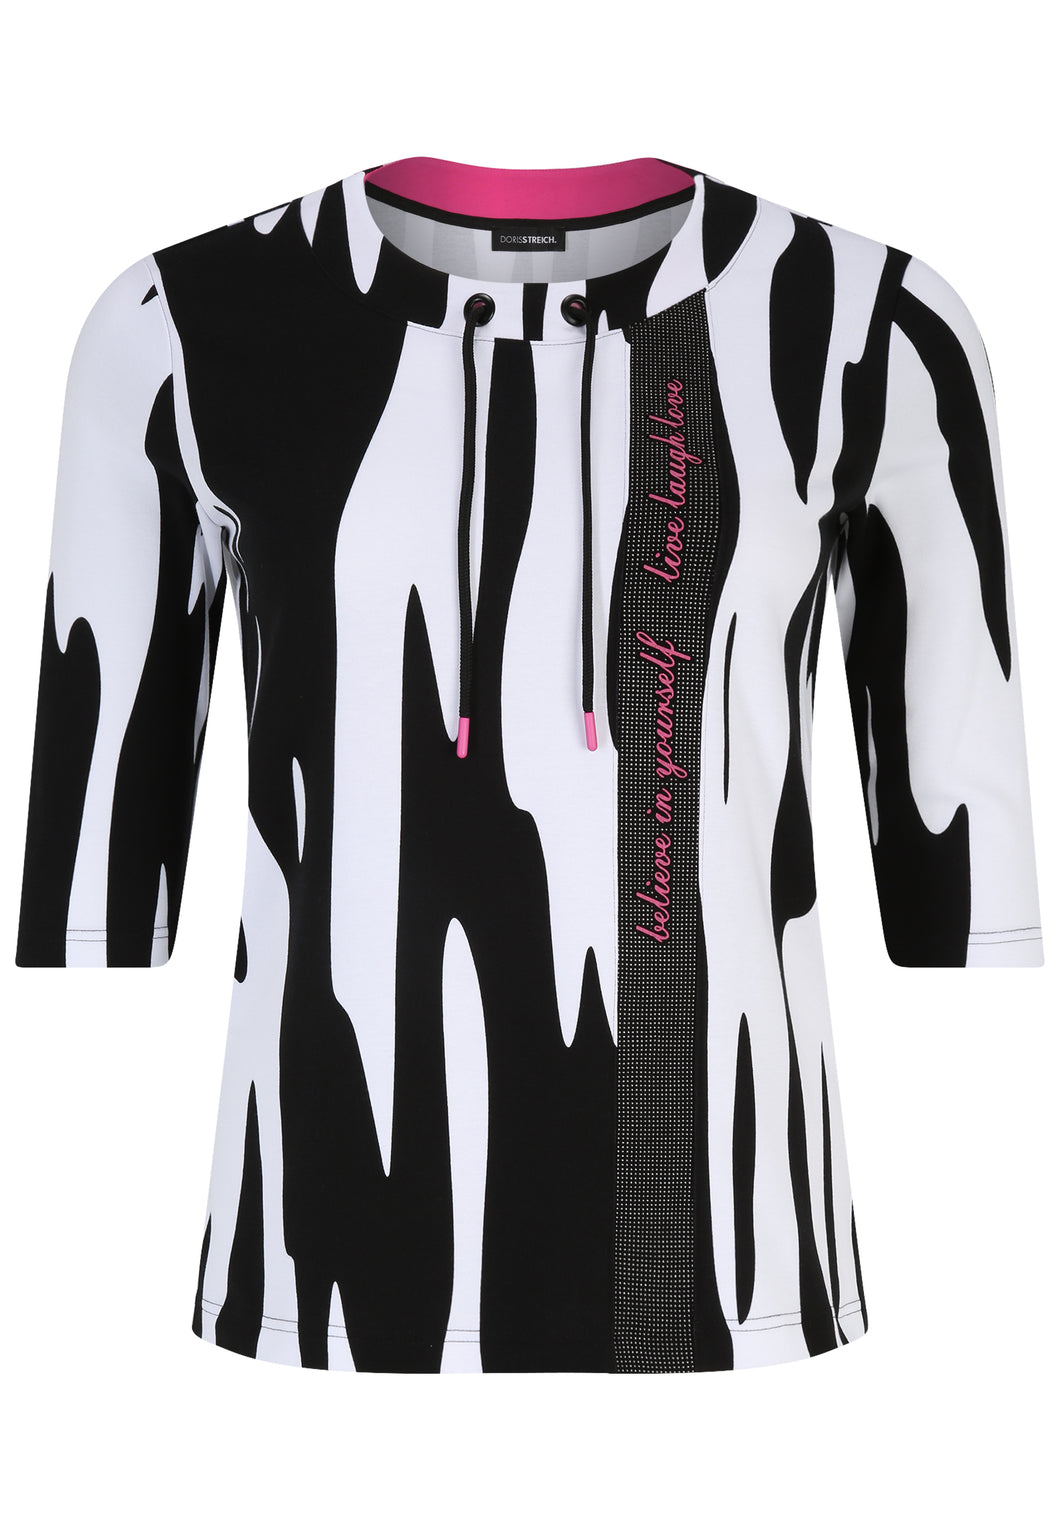 Doris Streich Sweatshirt mit Grafik-Print und 3/4-Ärmeln Gr. 46 - 56